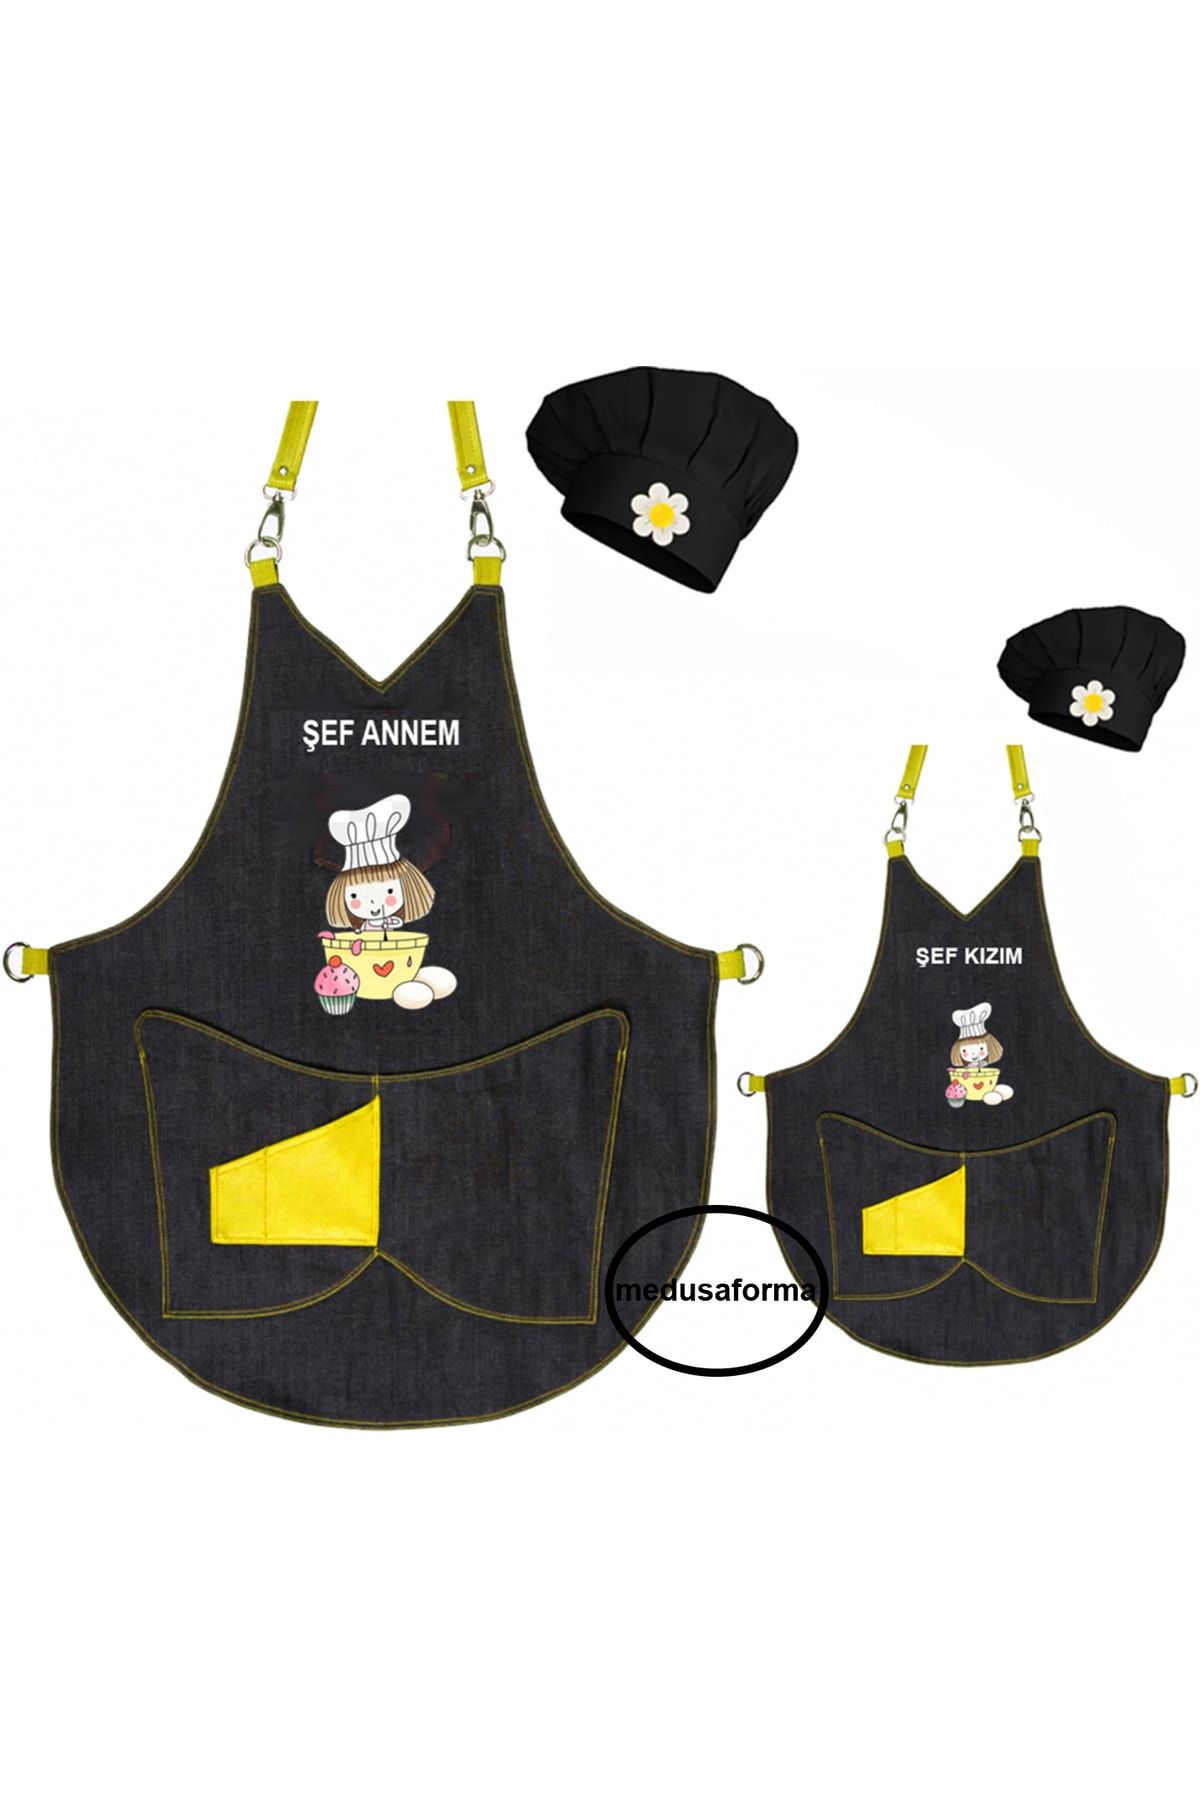 medusaforma Anne Kız Önlük Takım Çocuk Aşçı Kıyafeti Master Şef Mutfak Önlüğü Şef Önlük Kombinleri - Sarı